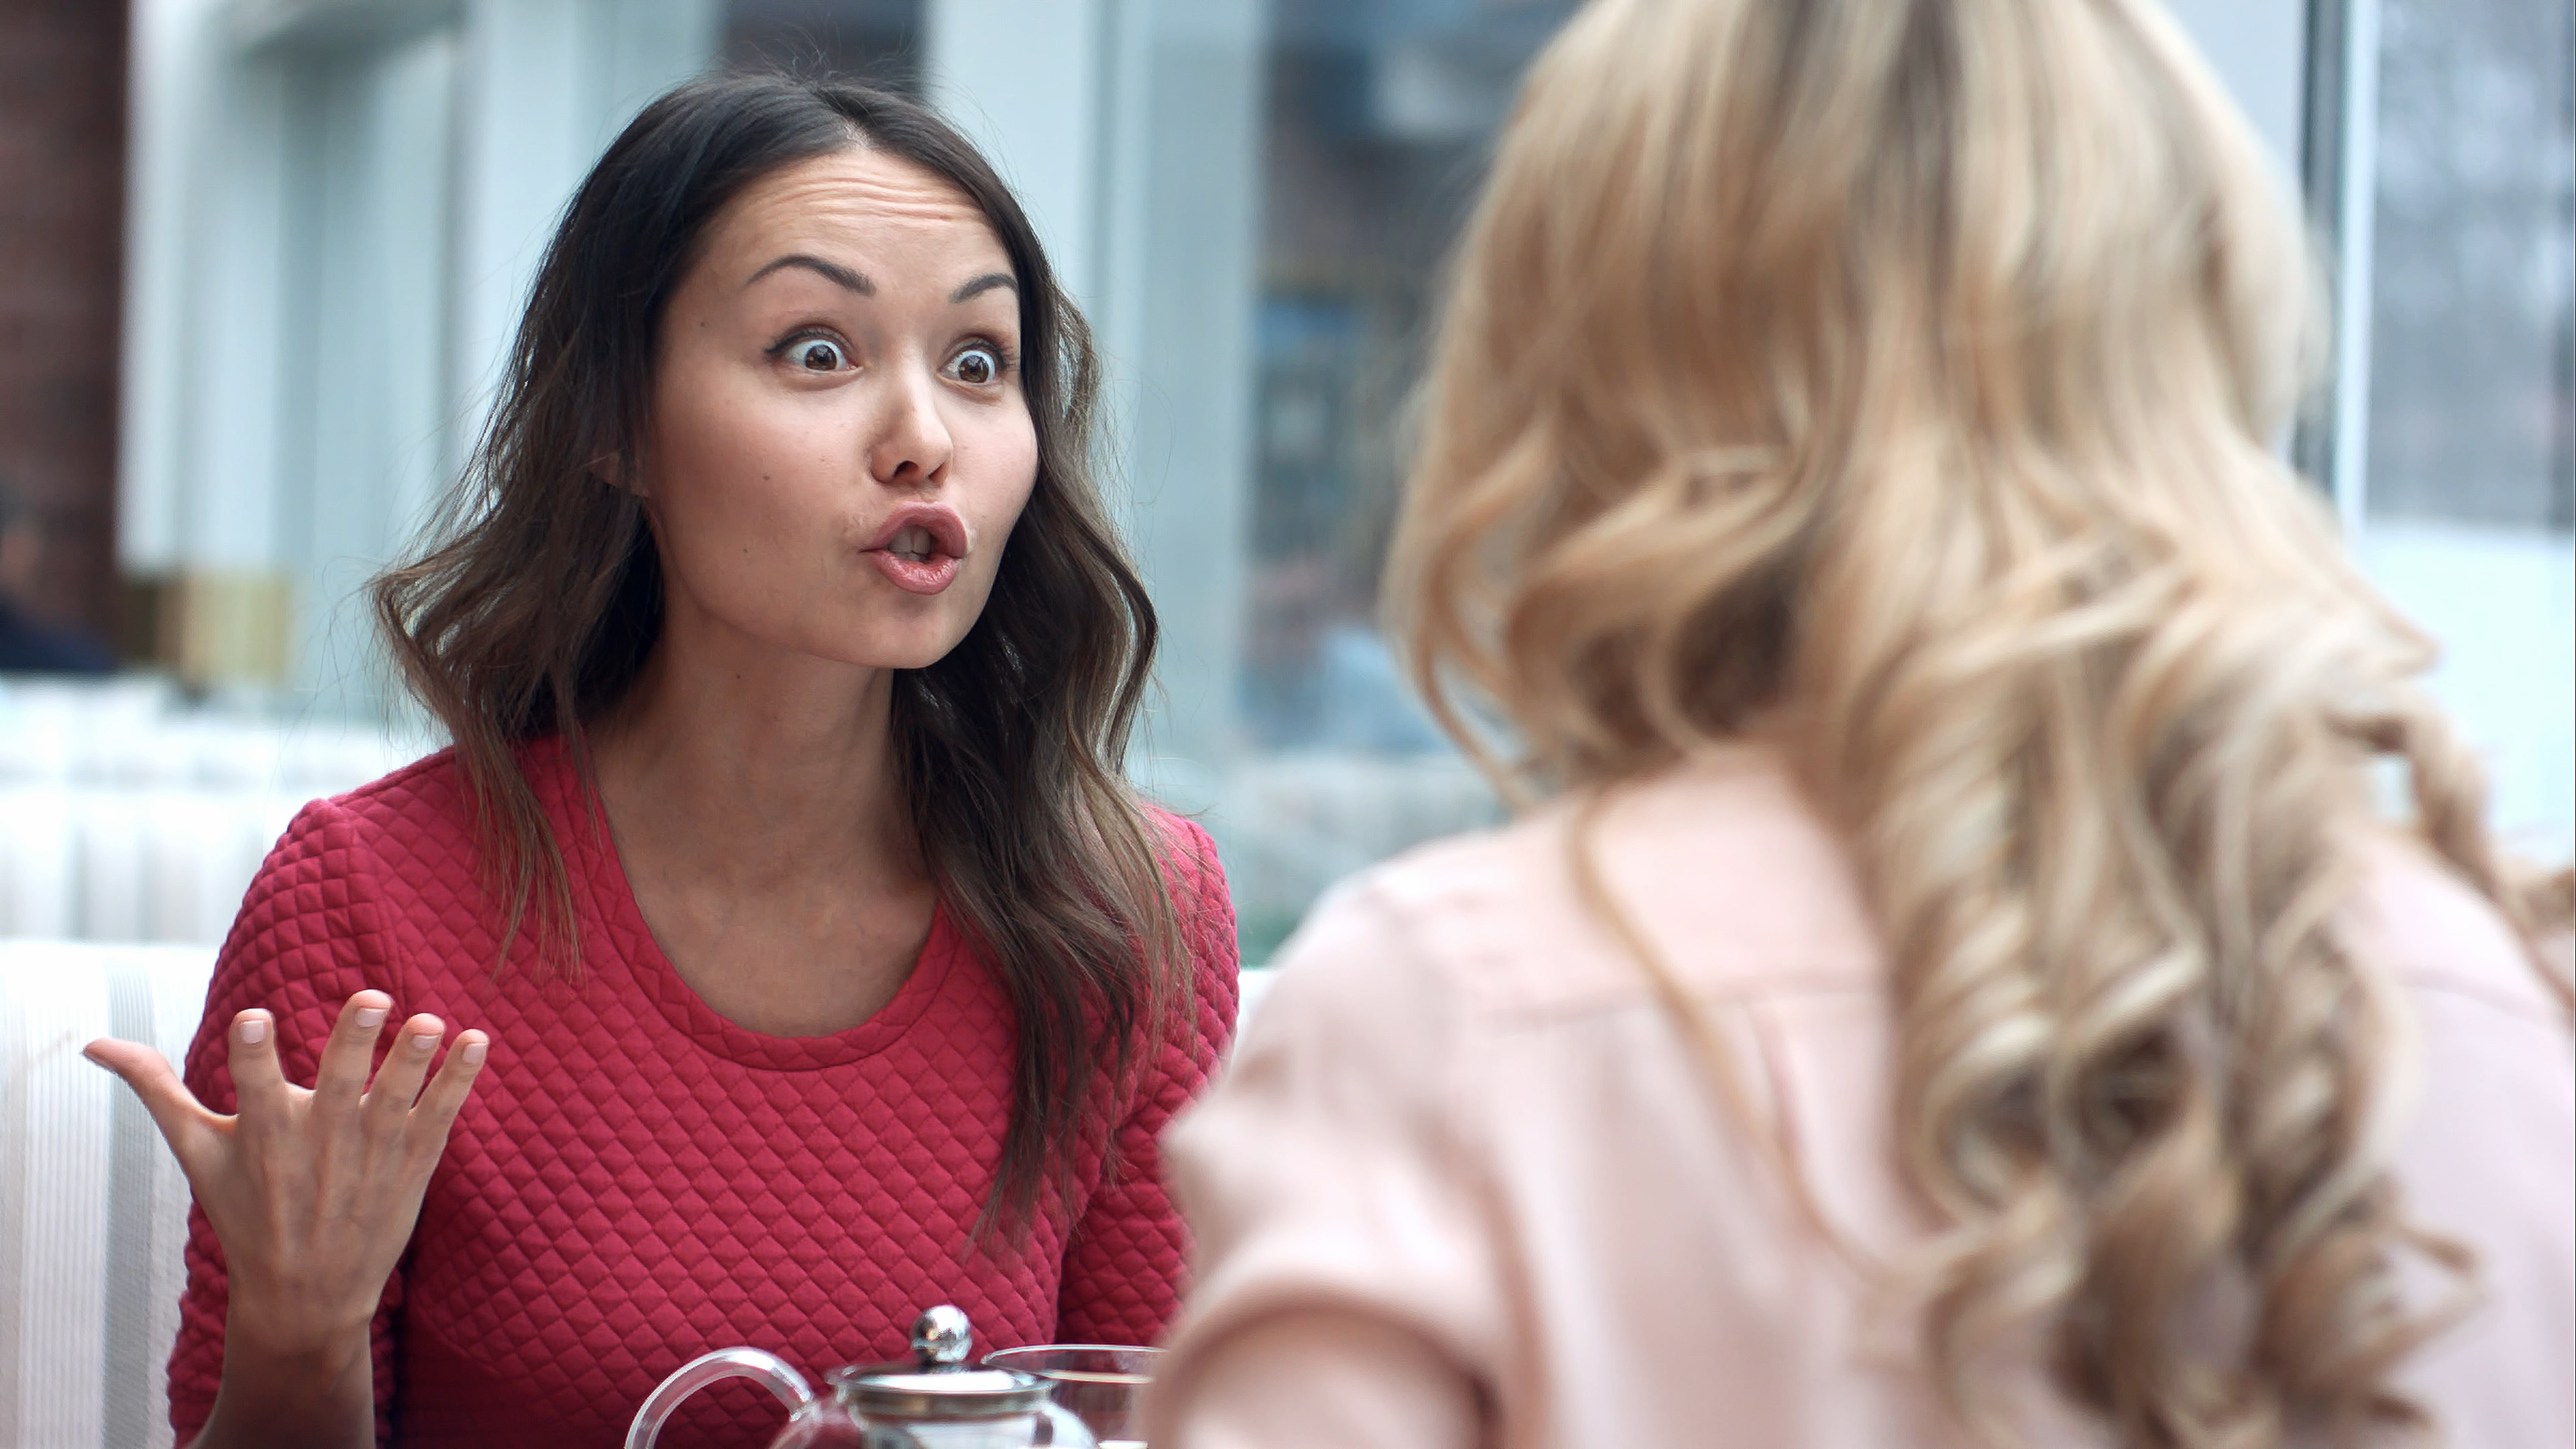 Zwei Frauen streiten sich in einem Café | Quelle: Shutterstock